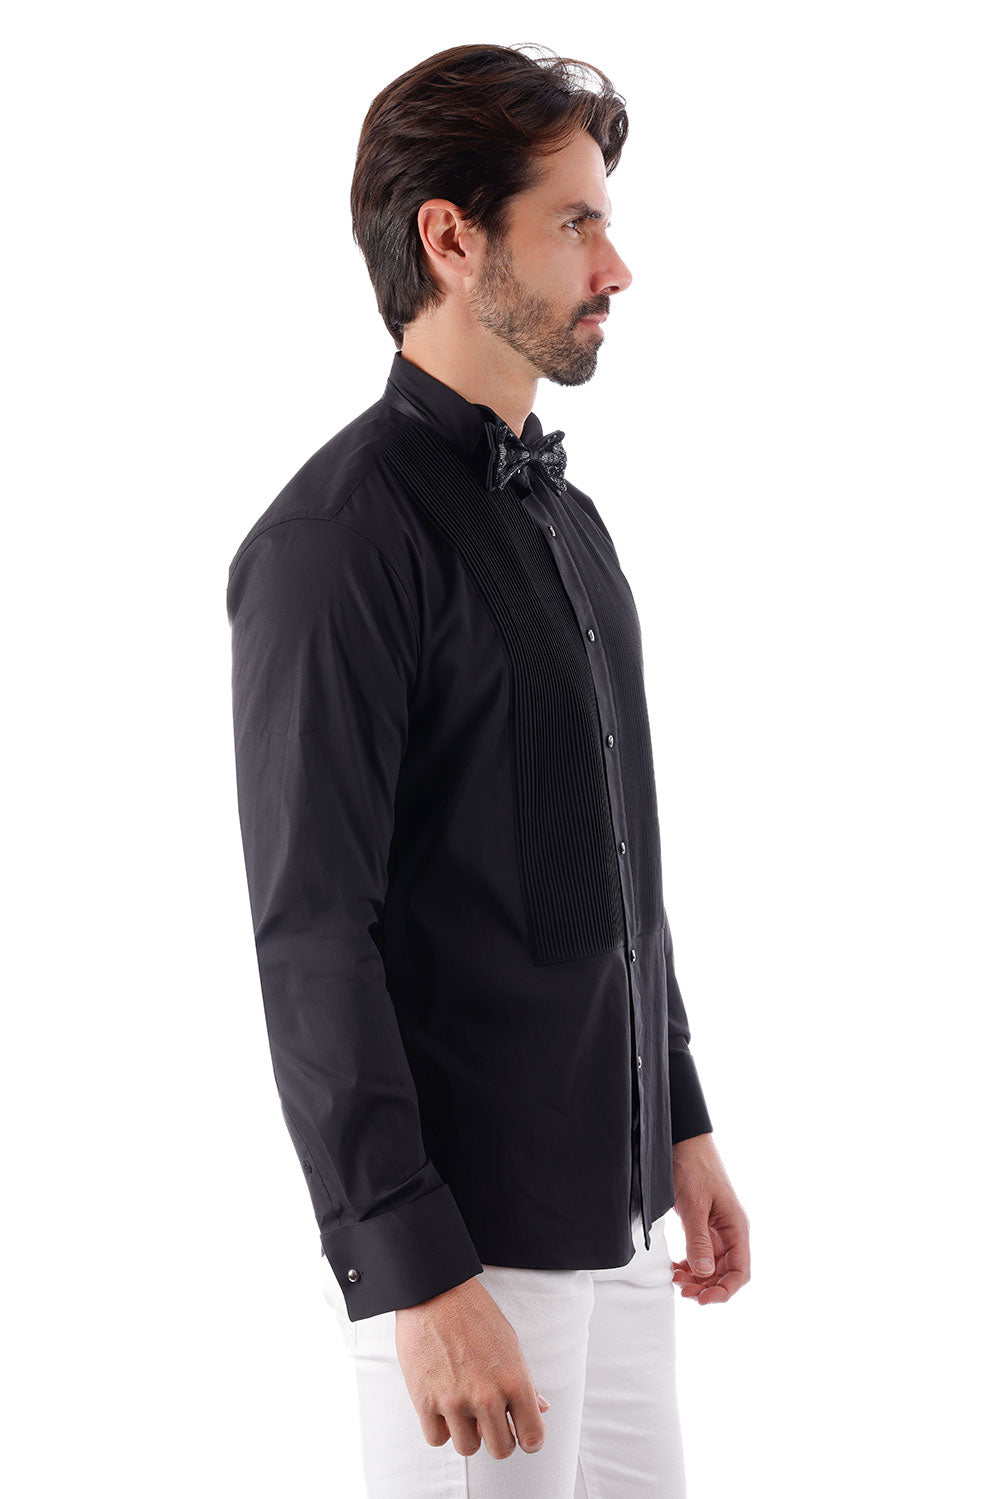 BARABAS Men's Tuxedo Wing Collar French Cuffs Long Sleeve Shirt 4txs02 Black